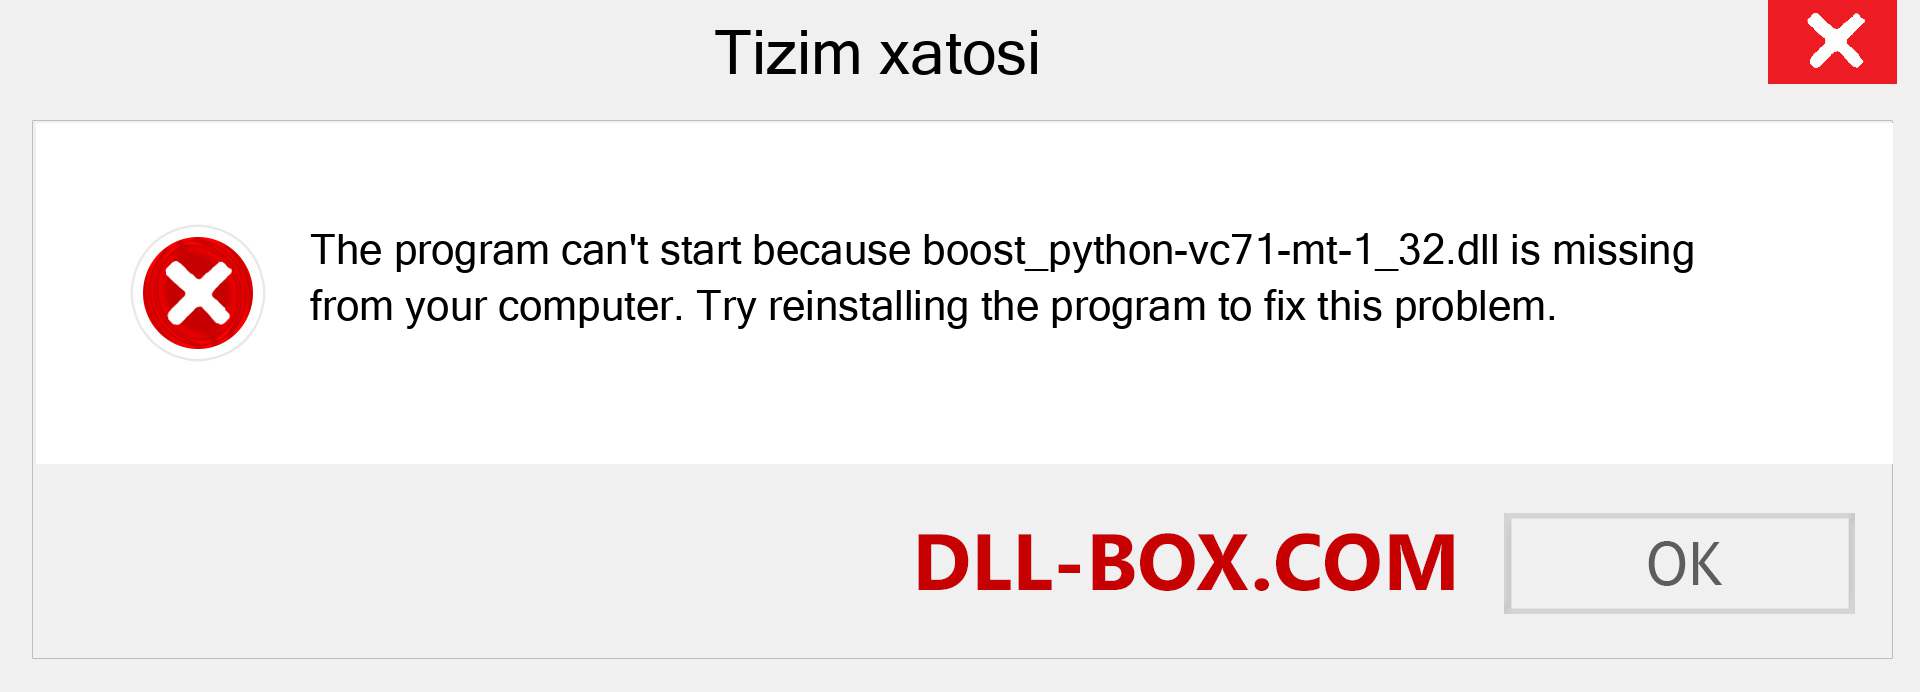 boost_python-vc71-mt-1_32.dll fayli yo'qolganmi?. Windows 7, 8, 10 uchun yuklab olish - Windowsda boost_python-vc71-mt-1_32 dll etishmayotgan xatoni tuzating, rasmlar, rasmlar